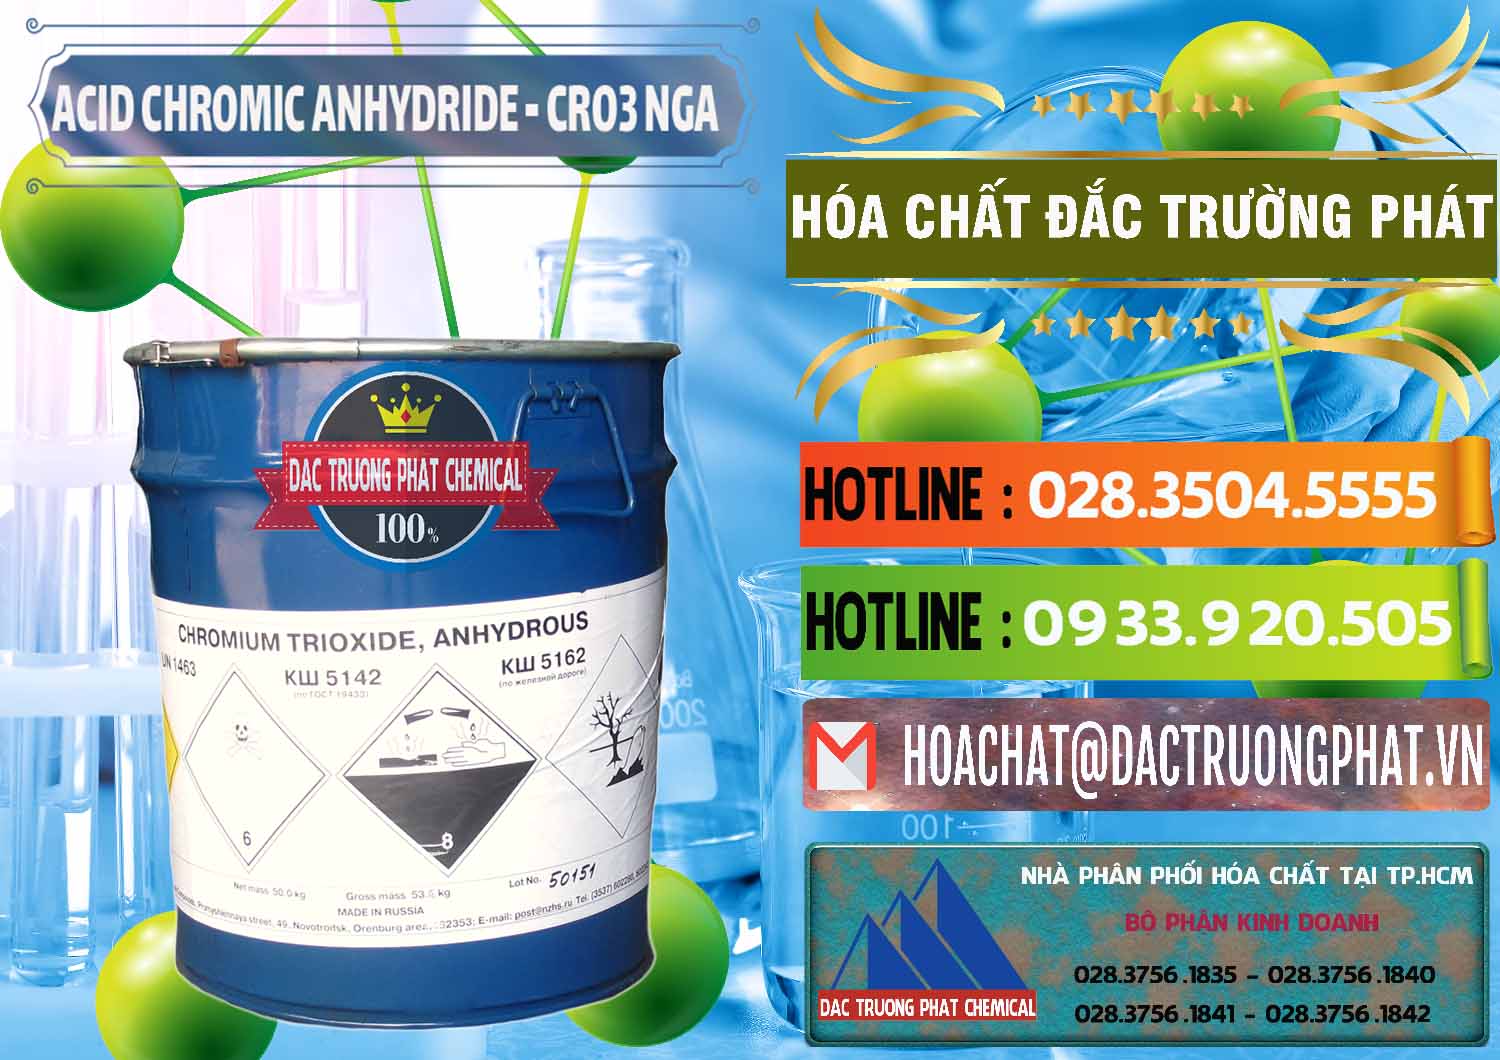 Nơi chuyên phân phối & bán Acid Chromic Anhydride - Cromic CRO3 Nga Russia - 0006 - Nơi chuyên phân phối _ nhập khẩu hóa chất tại TP.HCM - cungcaphoachat.com.vn